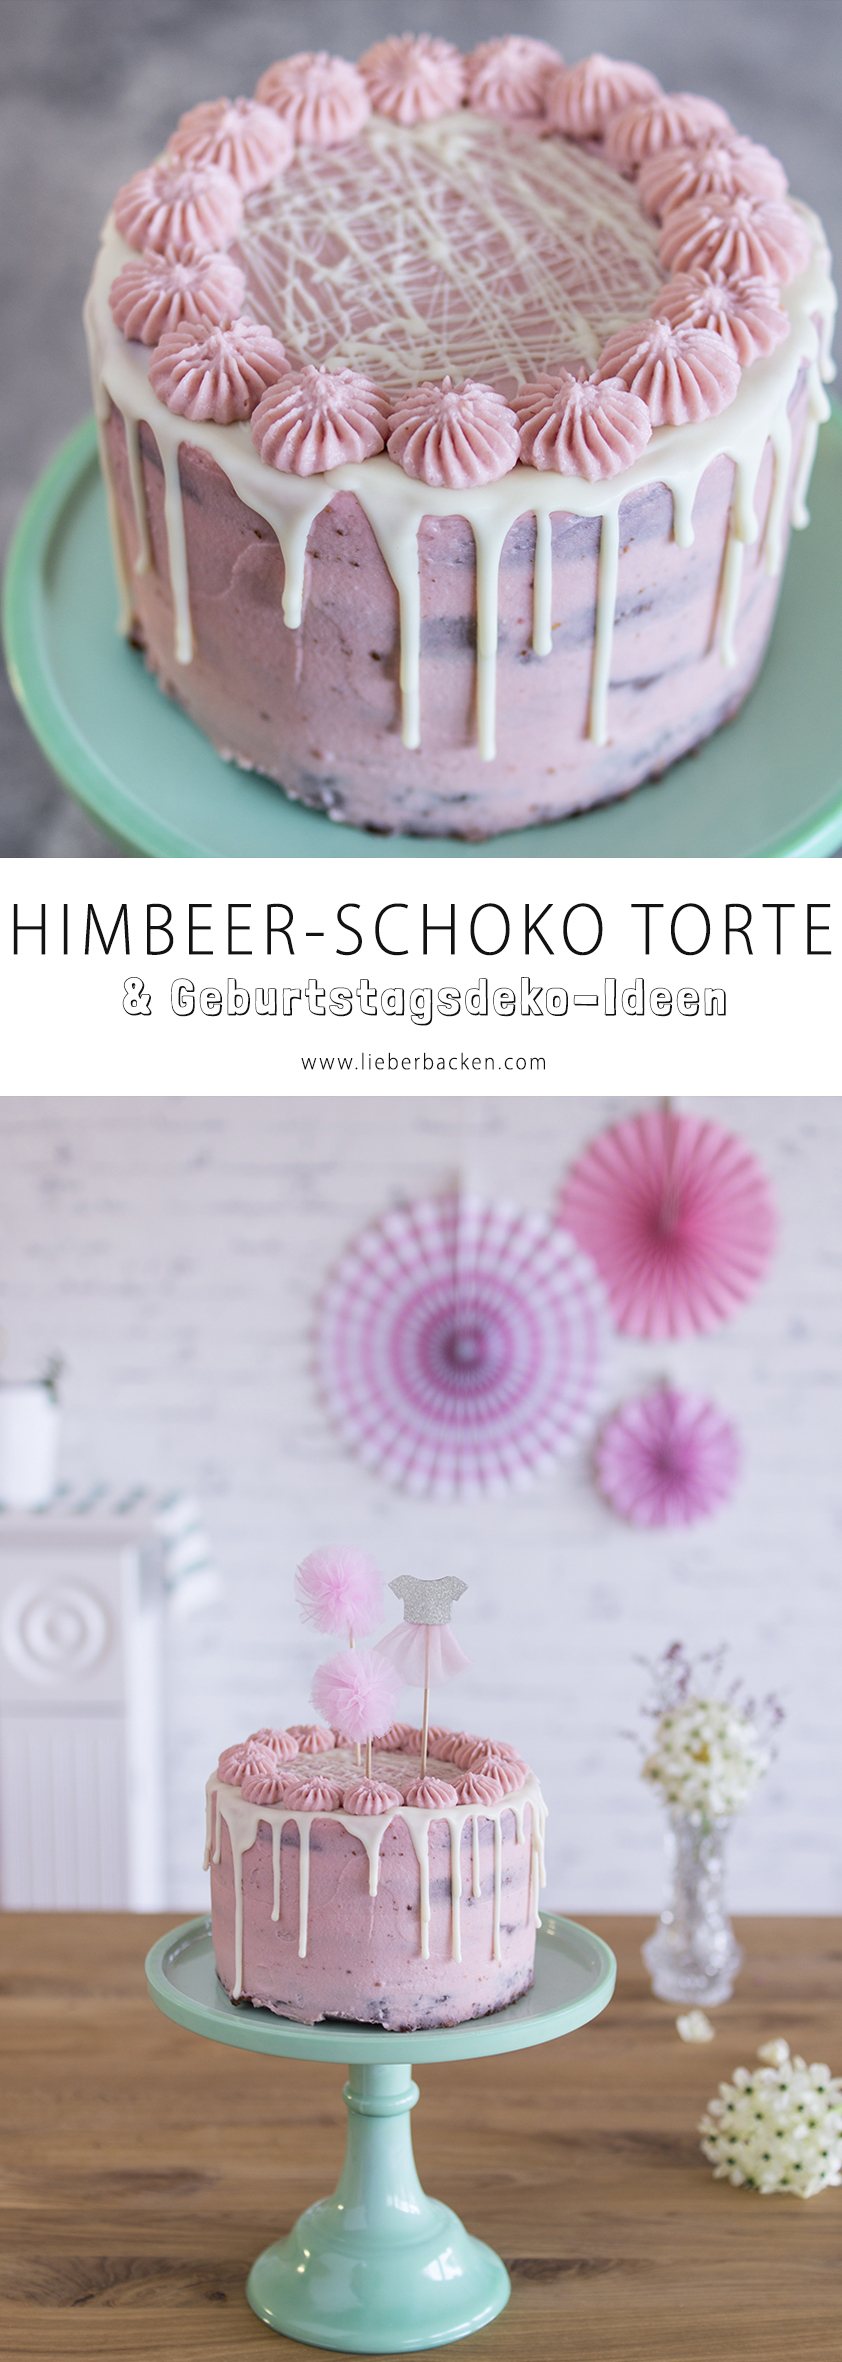 Himbeer Schoko Torte und Geburtstagsdeko-Ideen für einen Mädchen-Geburtstag